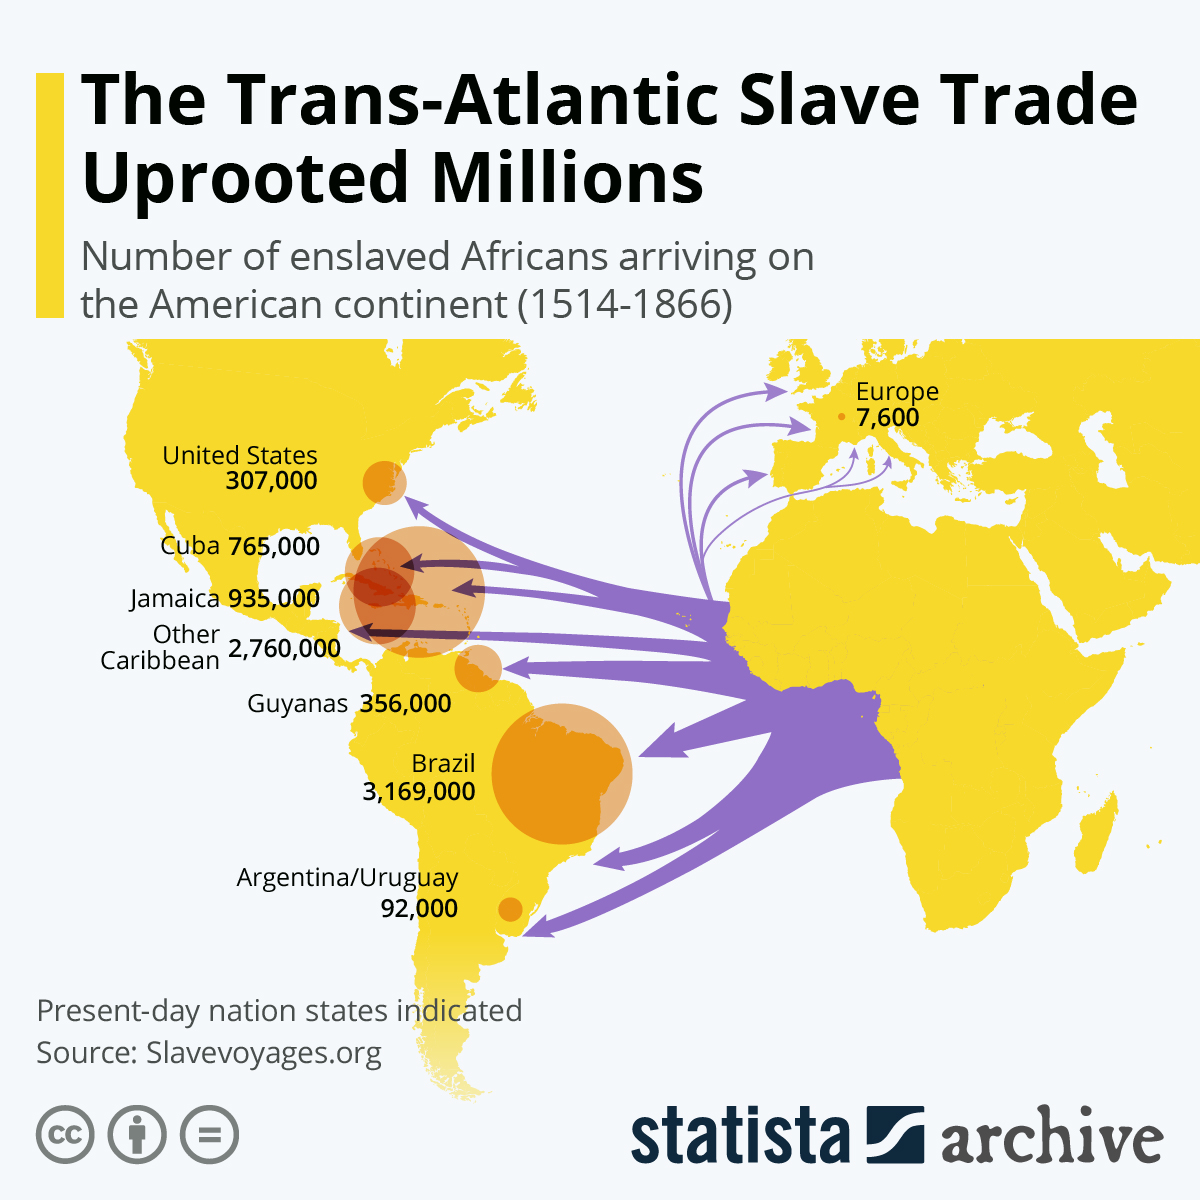 La traite transatlantique des esclaves par pays